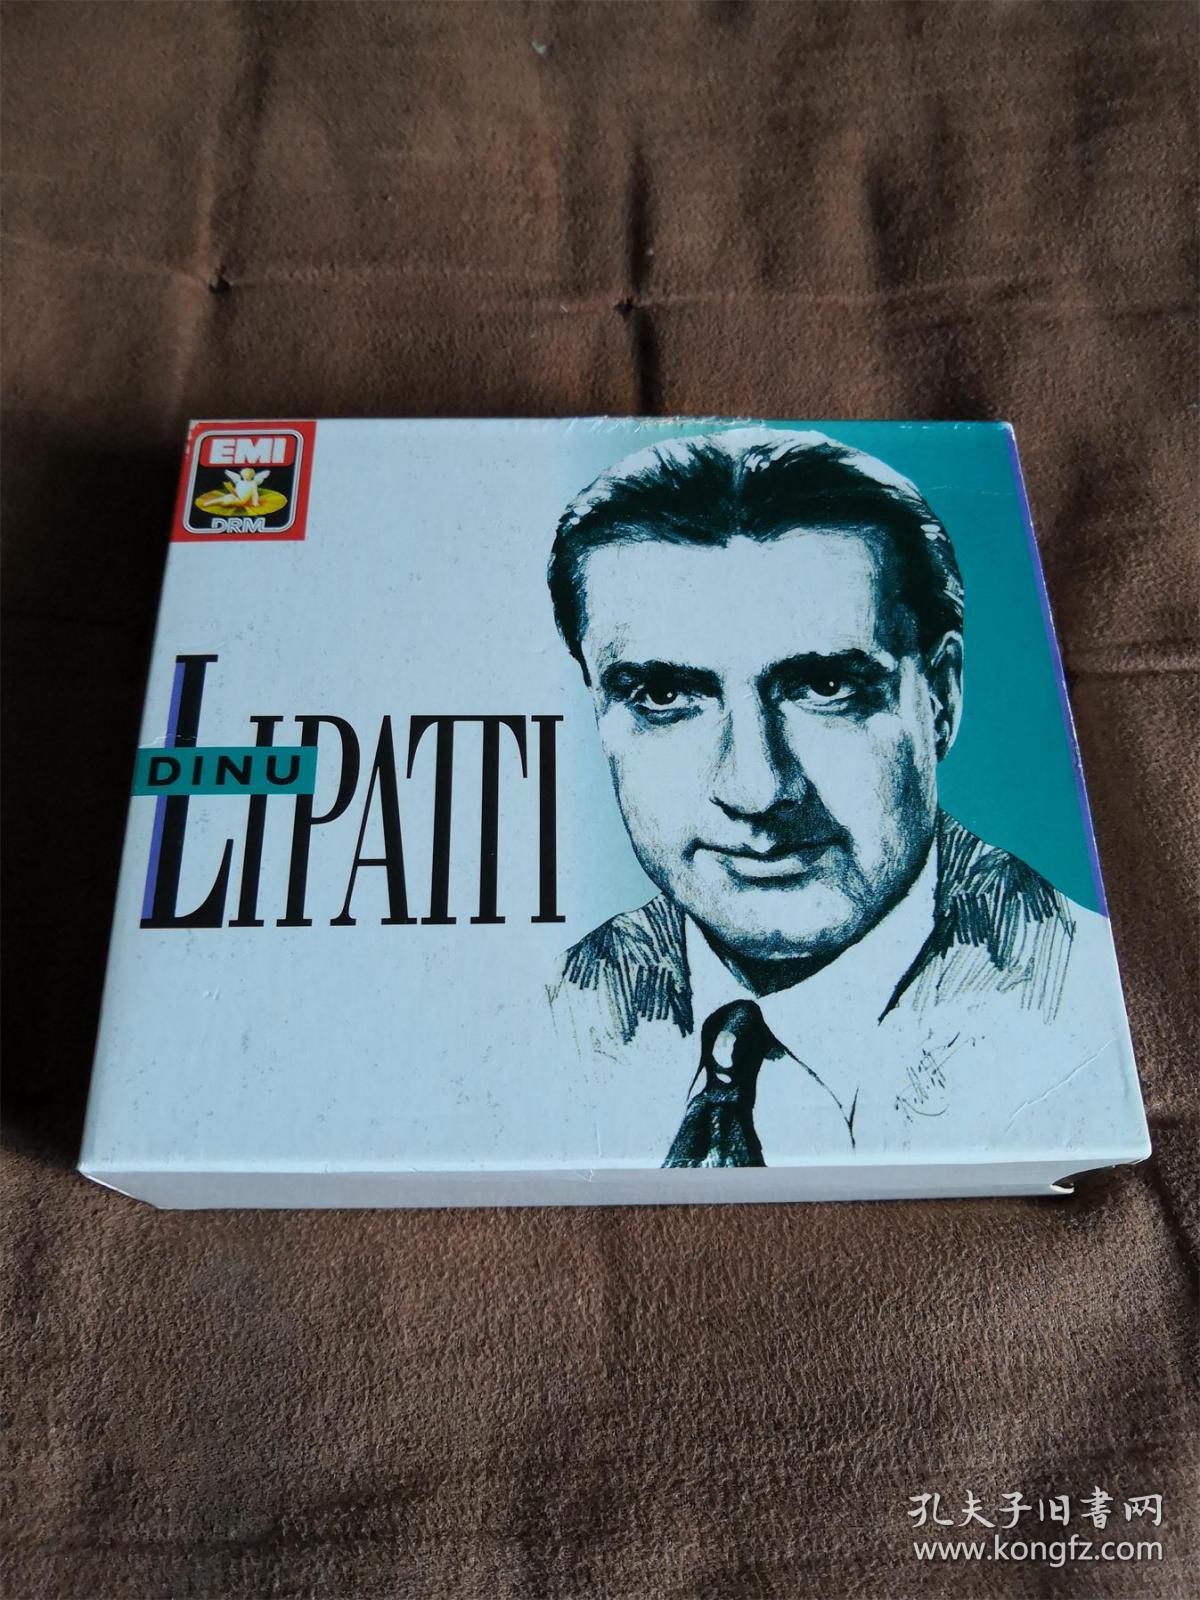 经典珍藏 EMI 李帕蒂的艺术/ The Legacy of Dinu Lipatti  5CD  荷单码首版